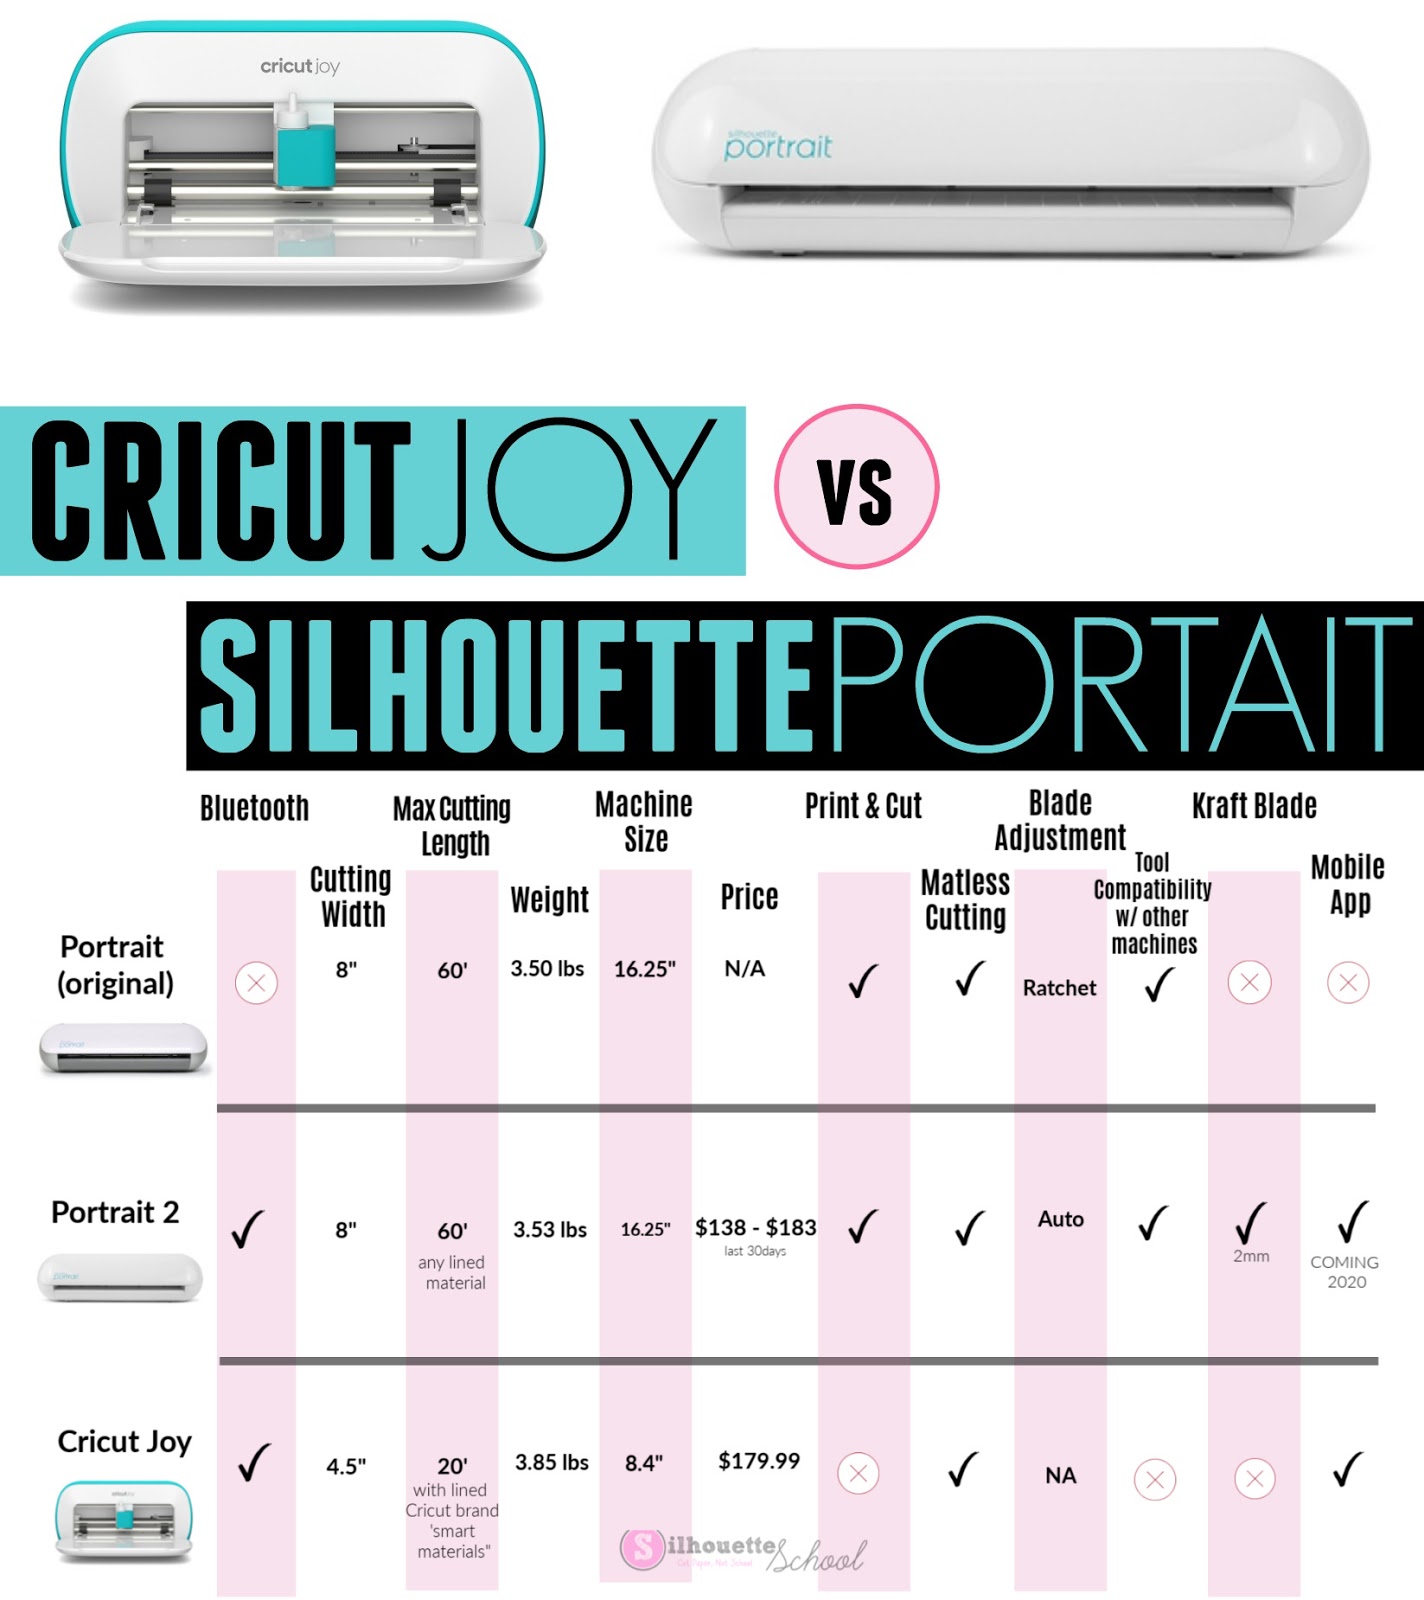 Cricut Joy vs Silhouette Portrait 3: Which is Better?